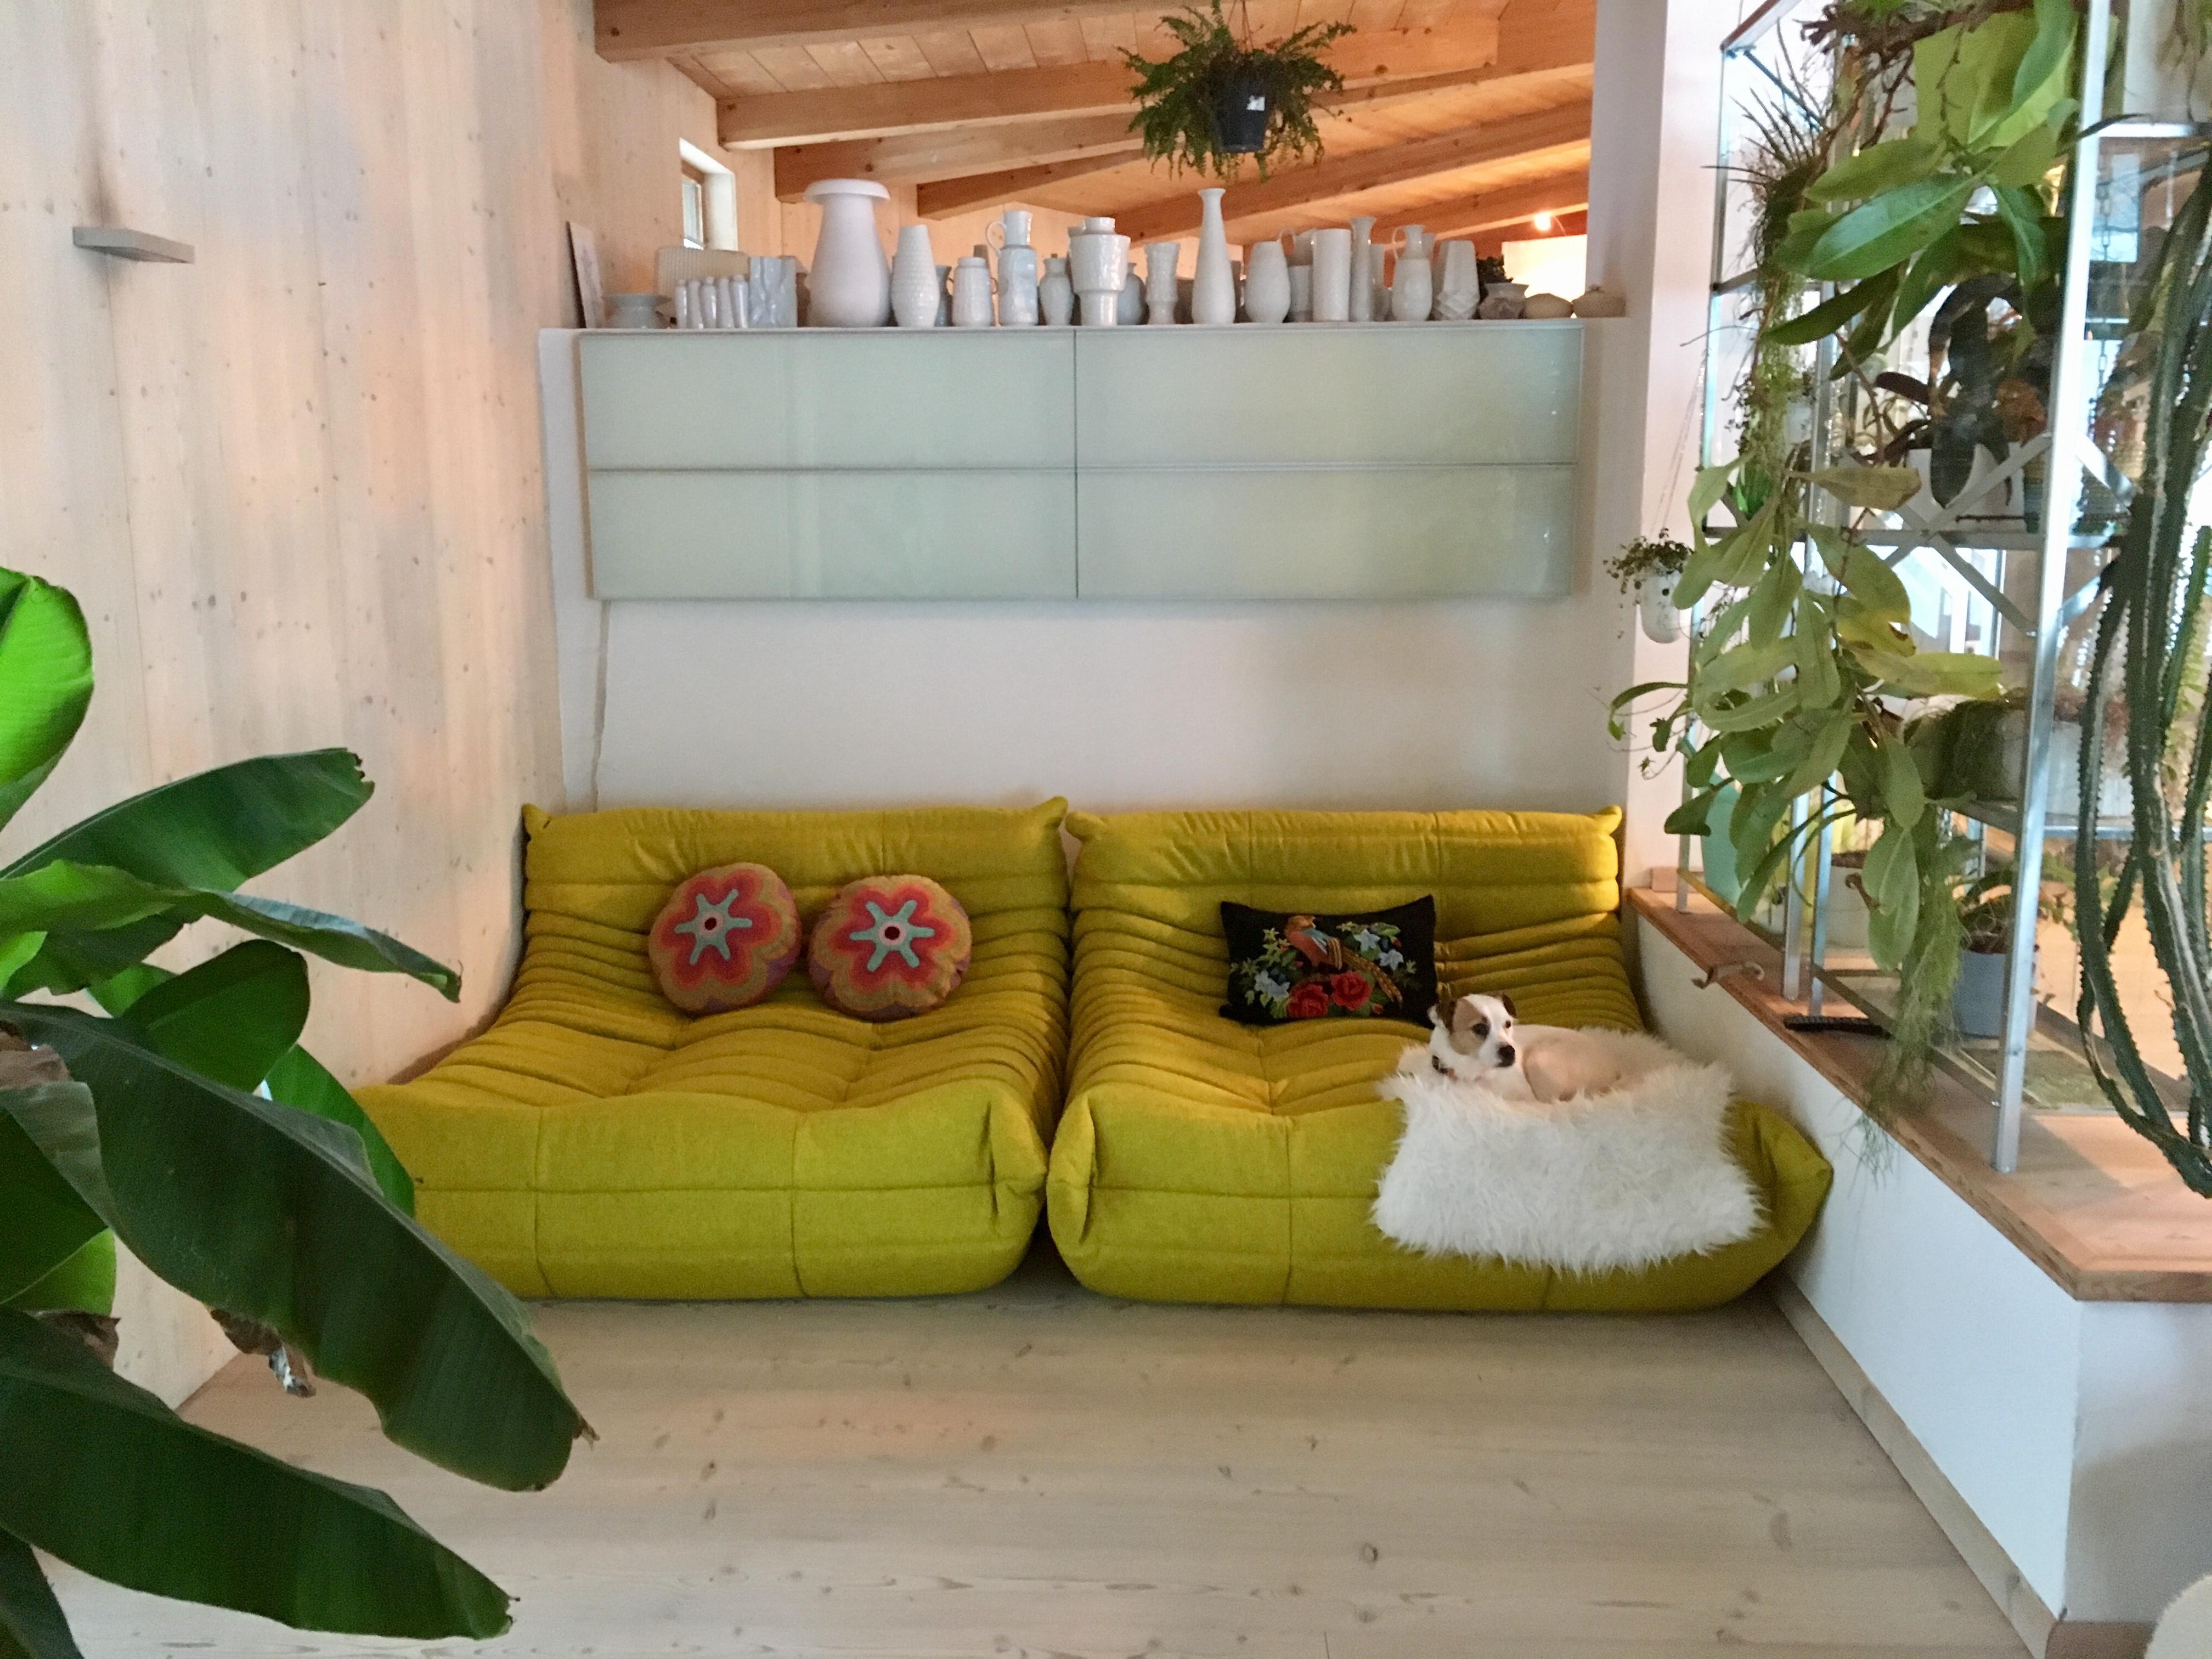 green room wohnzimmer... ich liebe meine neuen togo sofas 
#wohnzimmer #pflanzenliebe #grüneszimmer #lieblingsecke
